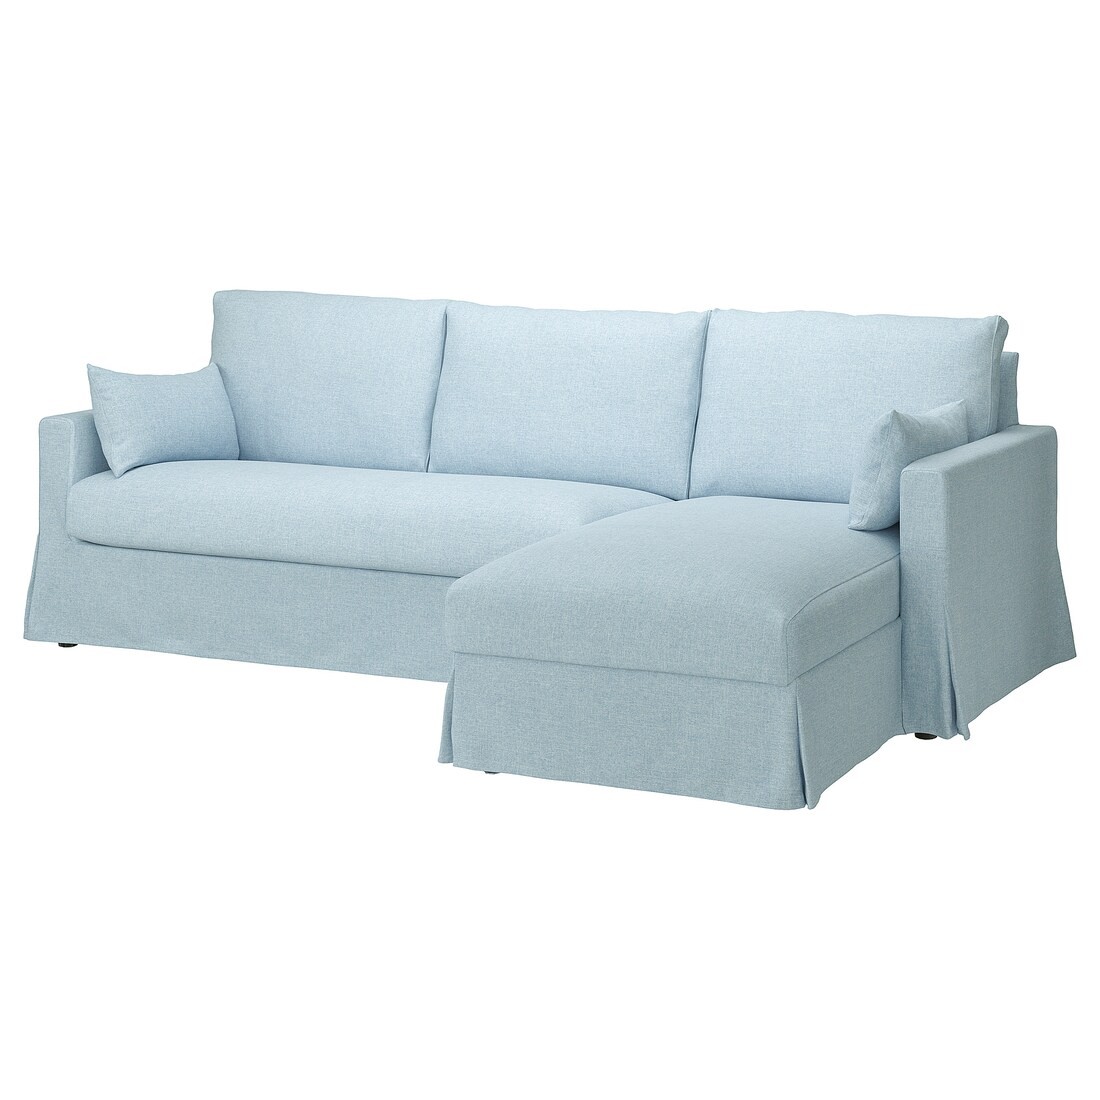 HYLTARP 3-місний диван з козеткою, правосторонній, Кіланда блідо-блакитна